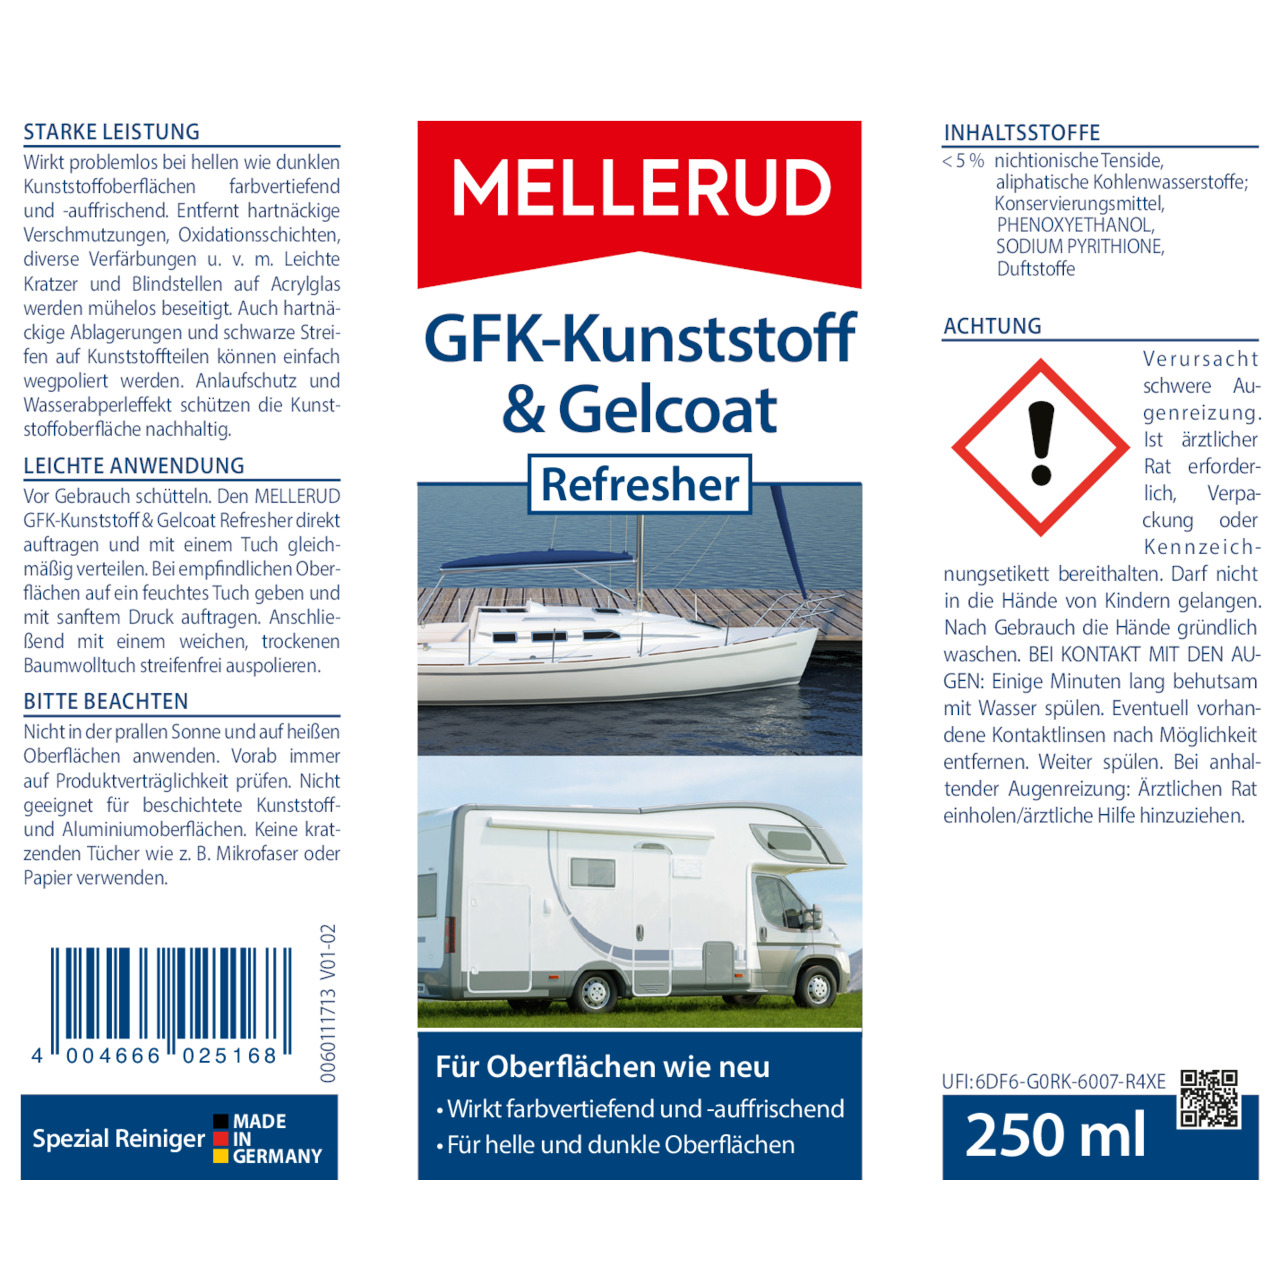 GFK-Kunststoff & Gelcoat Refresher 0,25 l